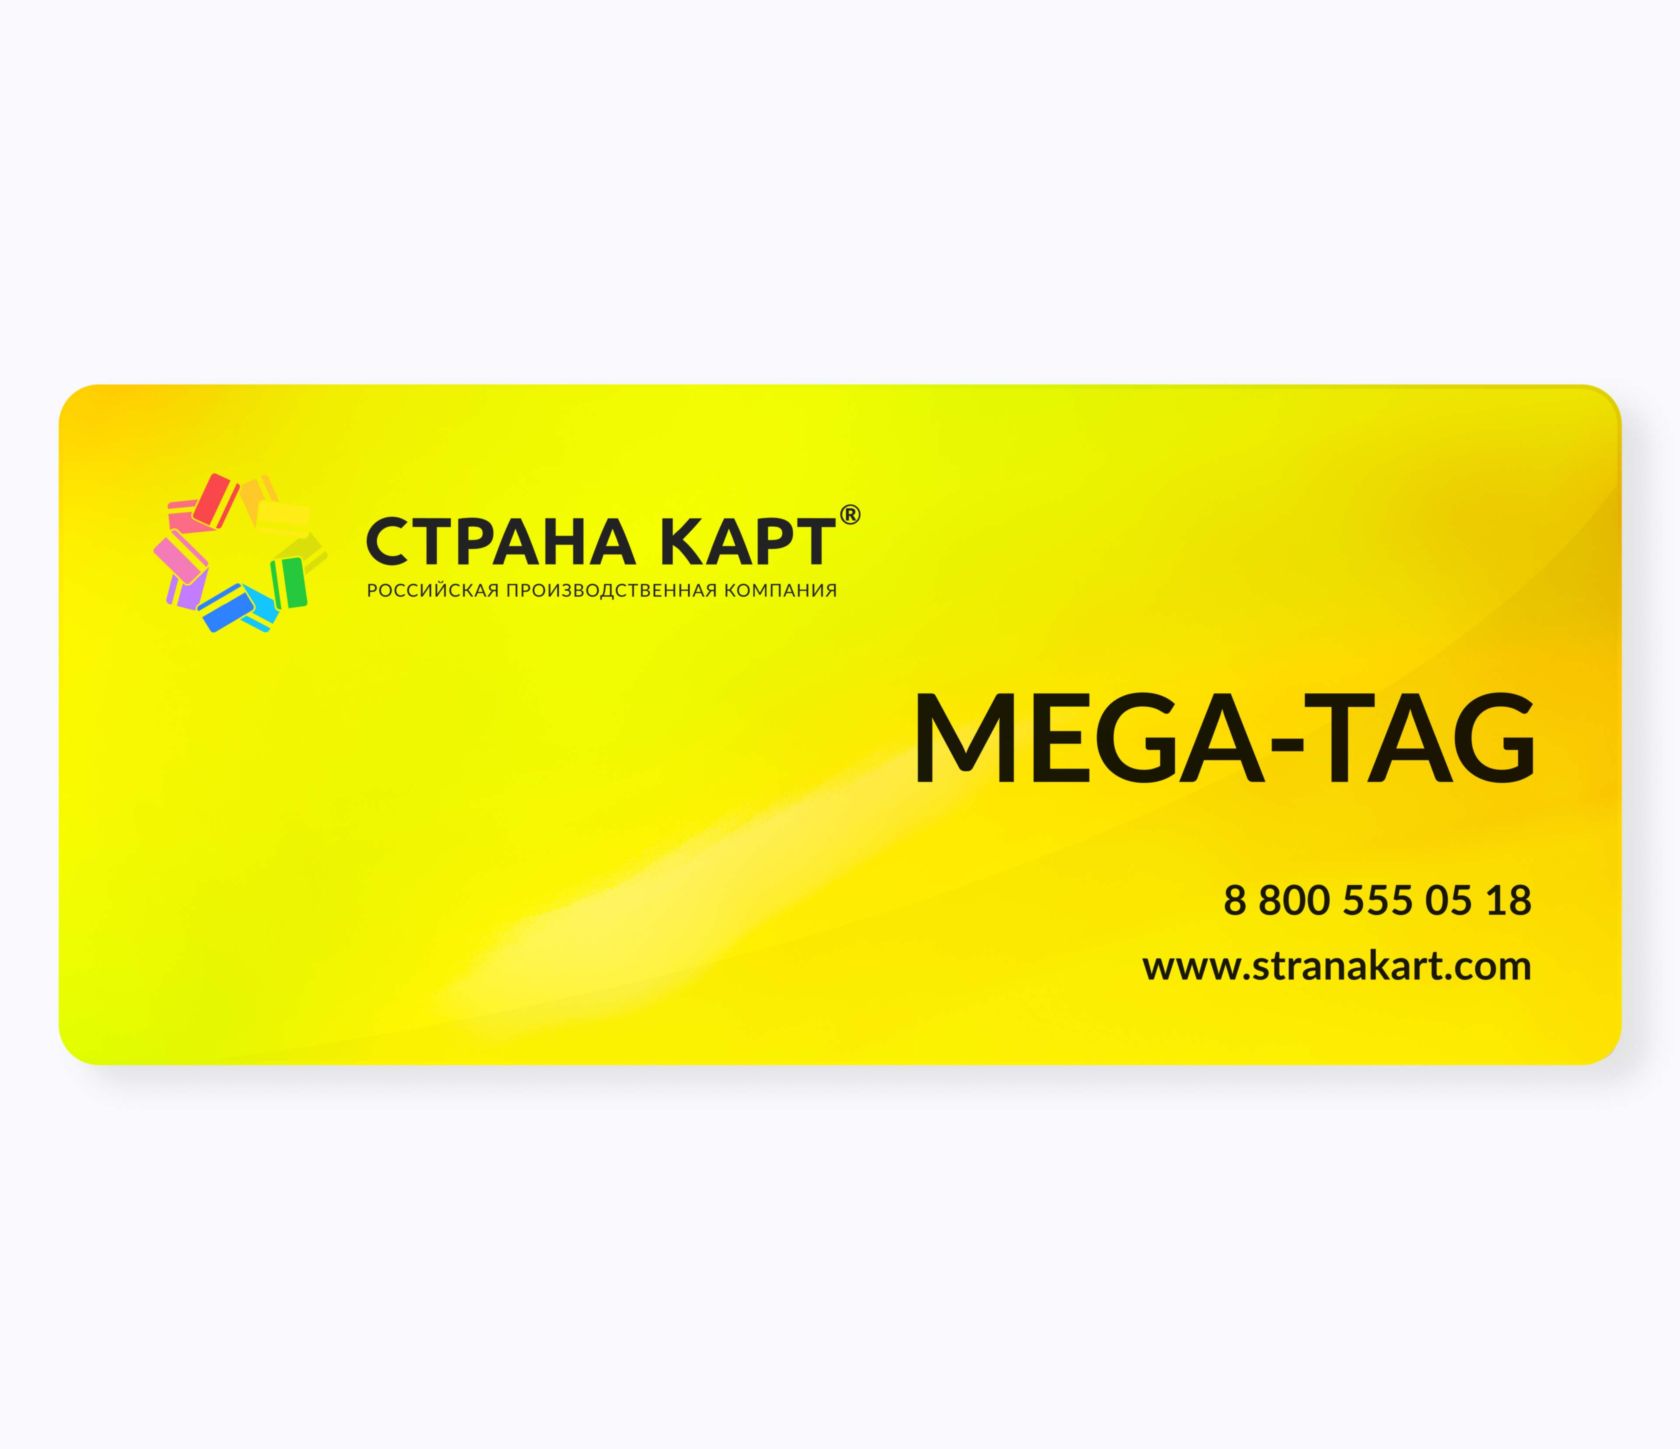 Топливные нестандартные пластиковые карты MEGA-TAG Топливные нестандартные пластиковые карты